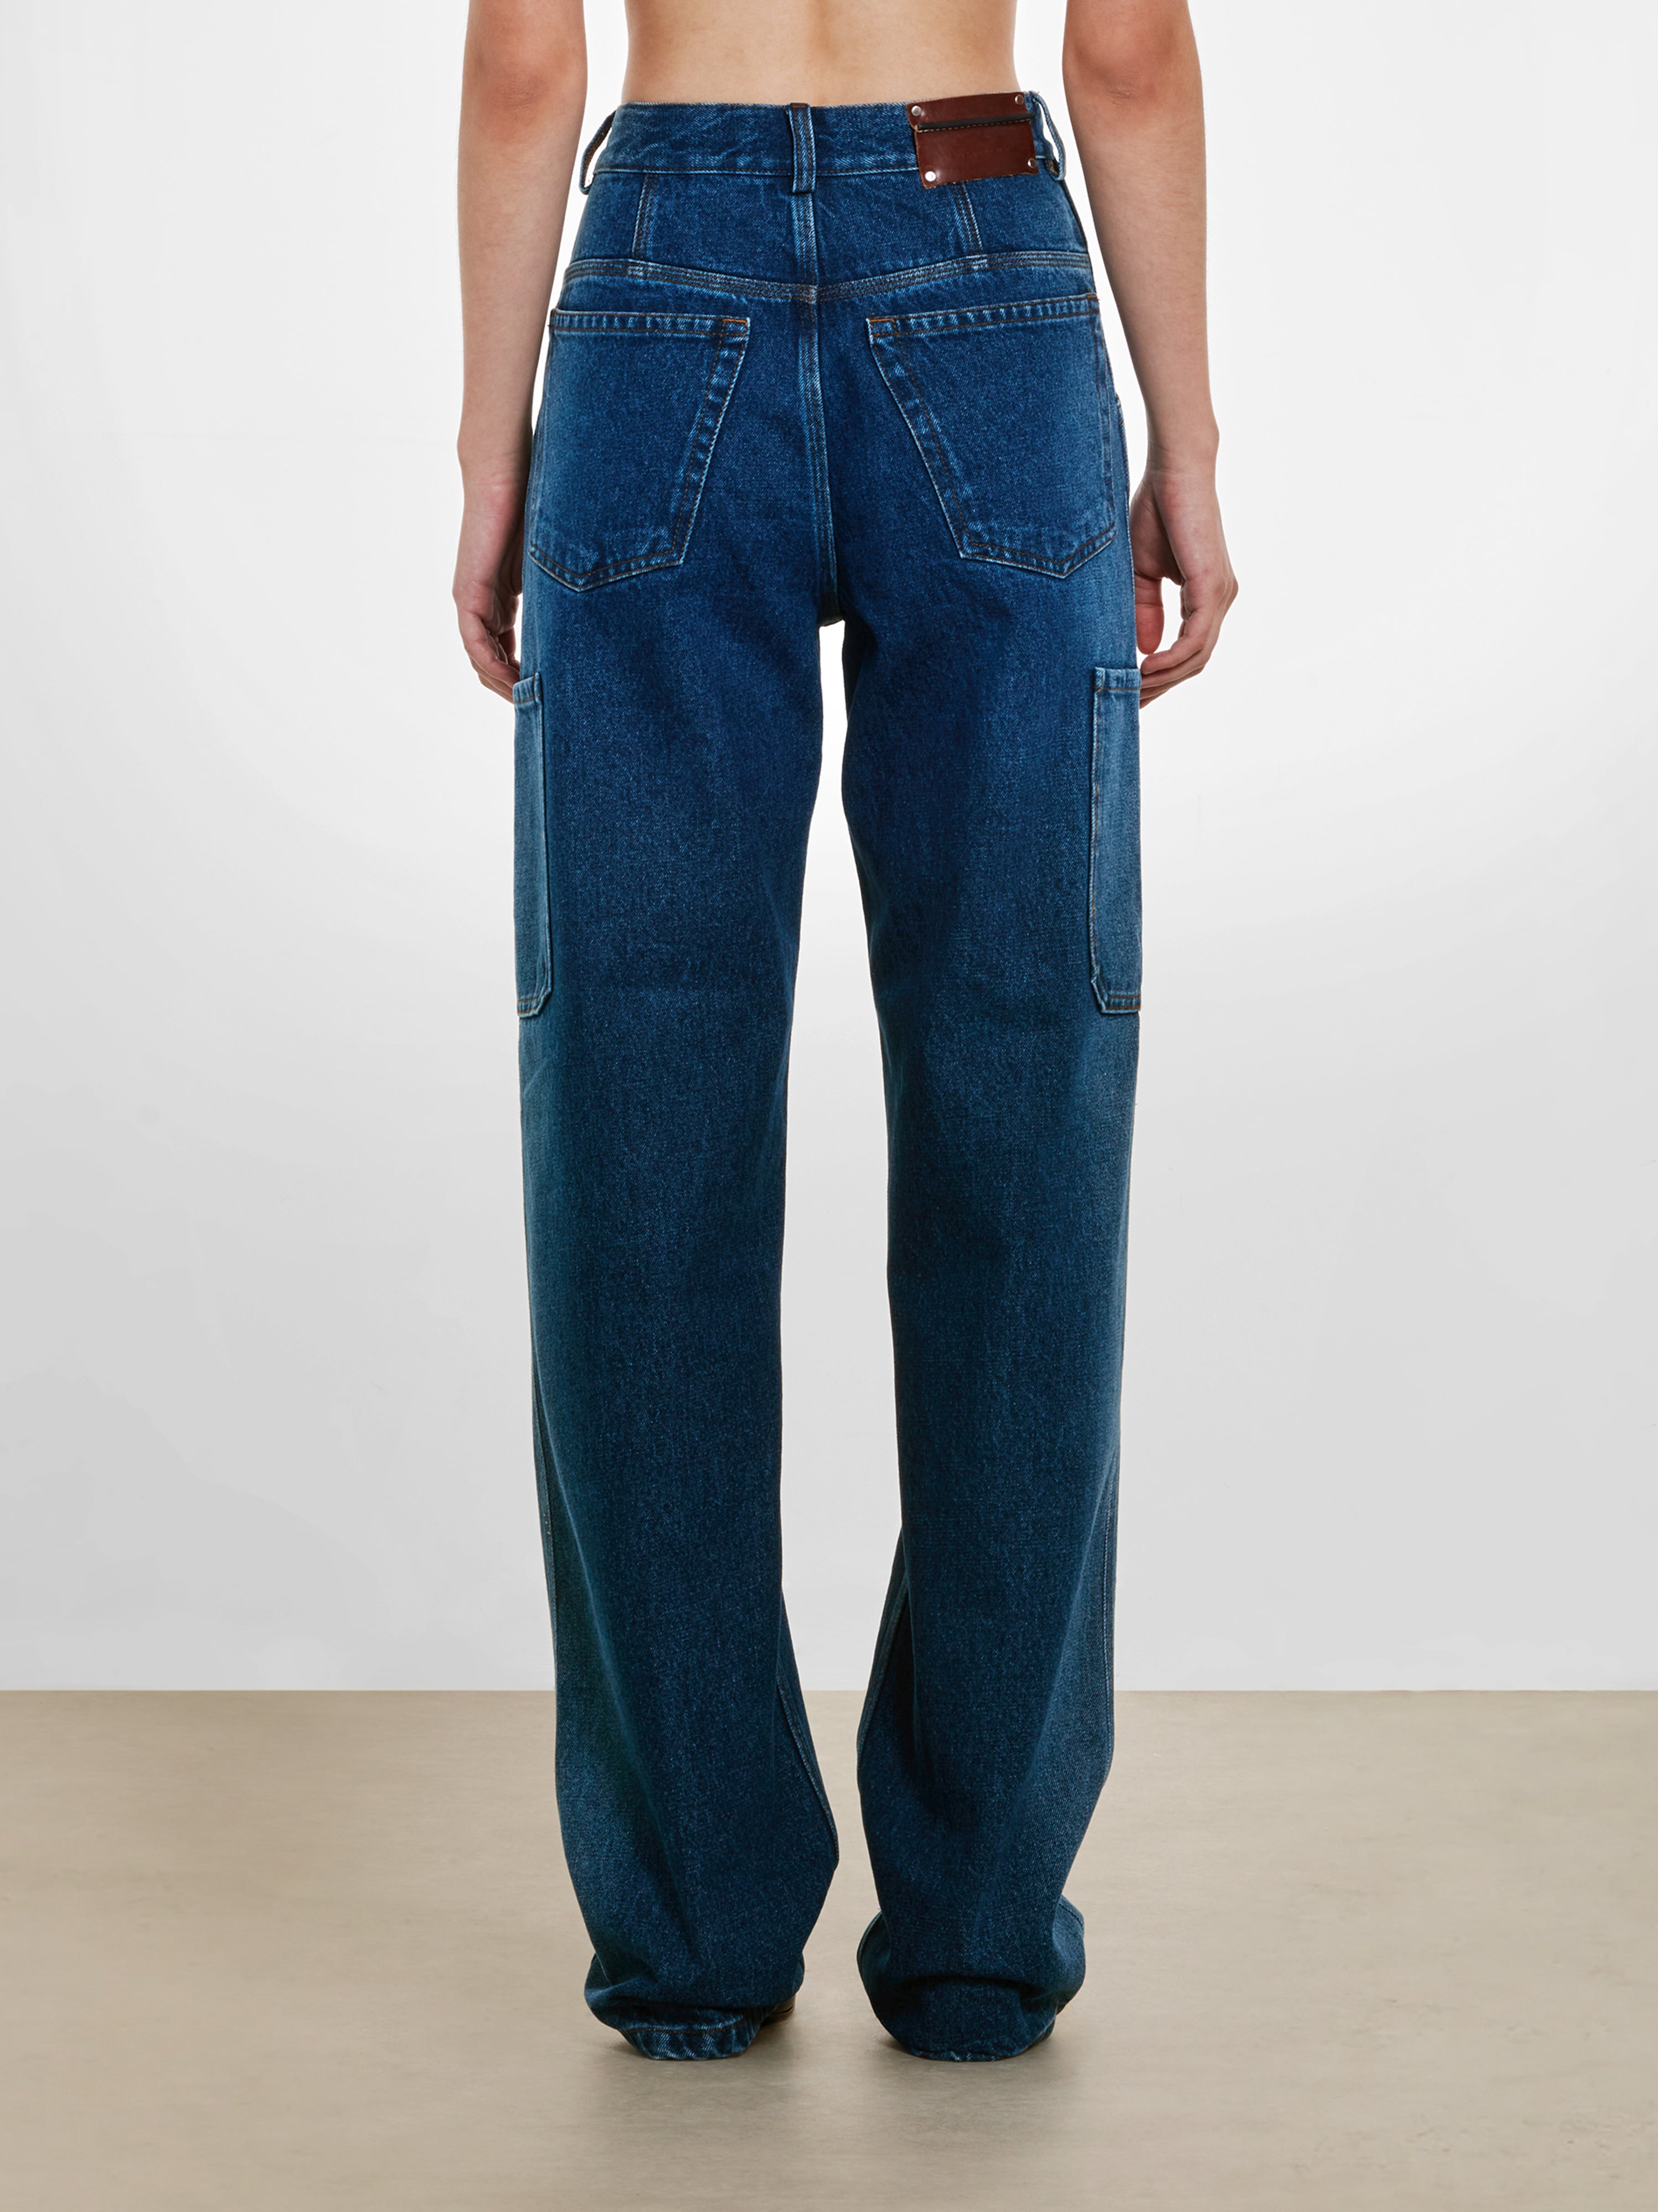 Dries Van Noten - Women’s Indigo Faded Jeans - (Indigo)